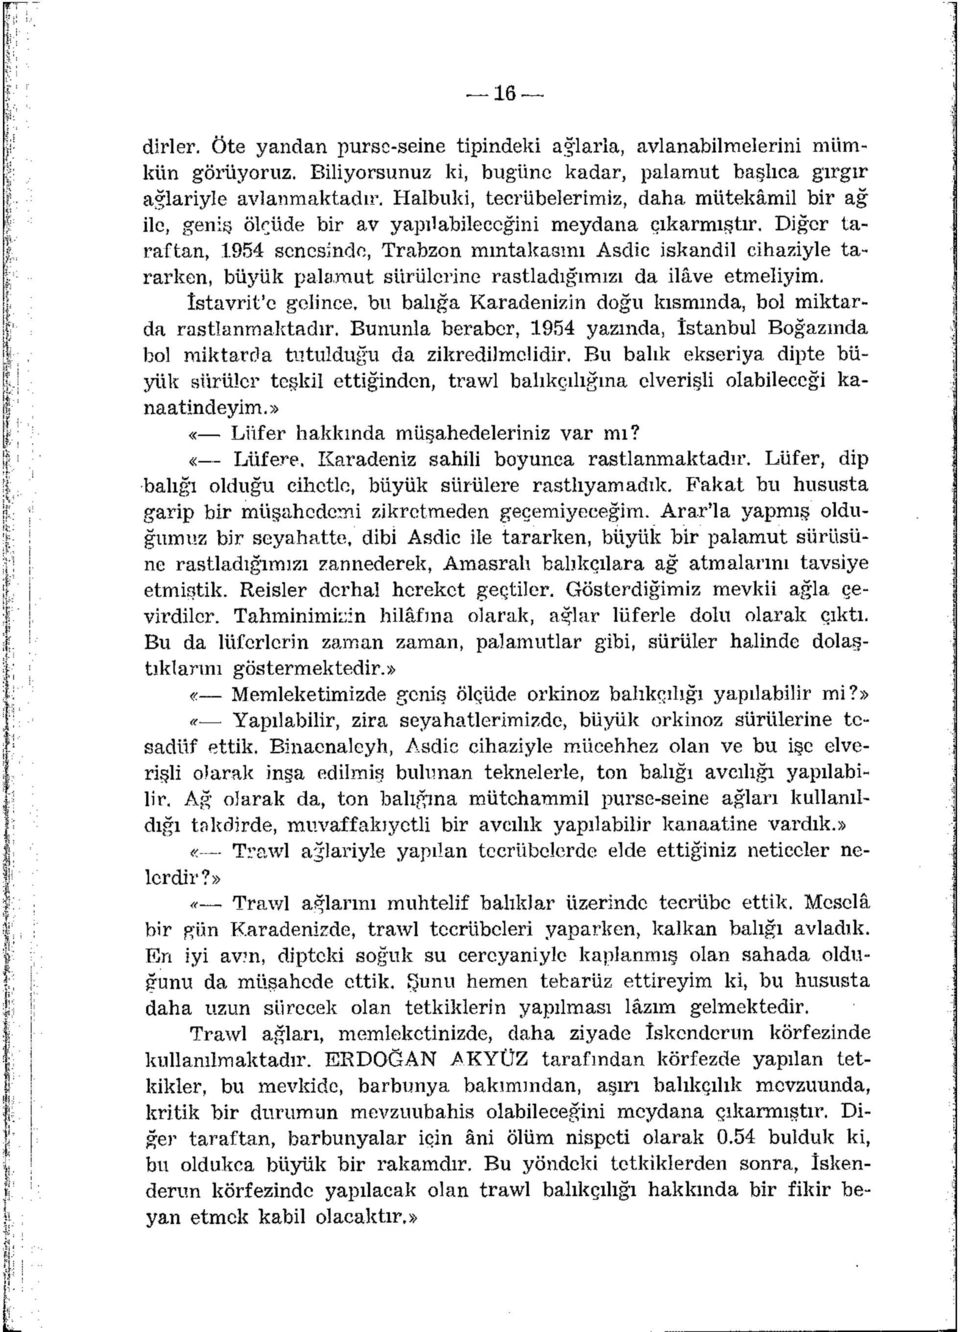 Diğer taraftan, 1954 senesinde, Trabzon mmtakasmı Asdic iskandil cihaziyle tararken, büyük palamut sürülerine rastladığımızı da ilâve etmeliyim.